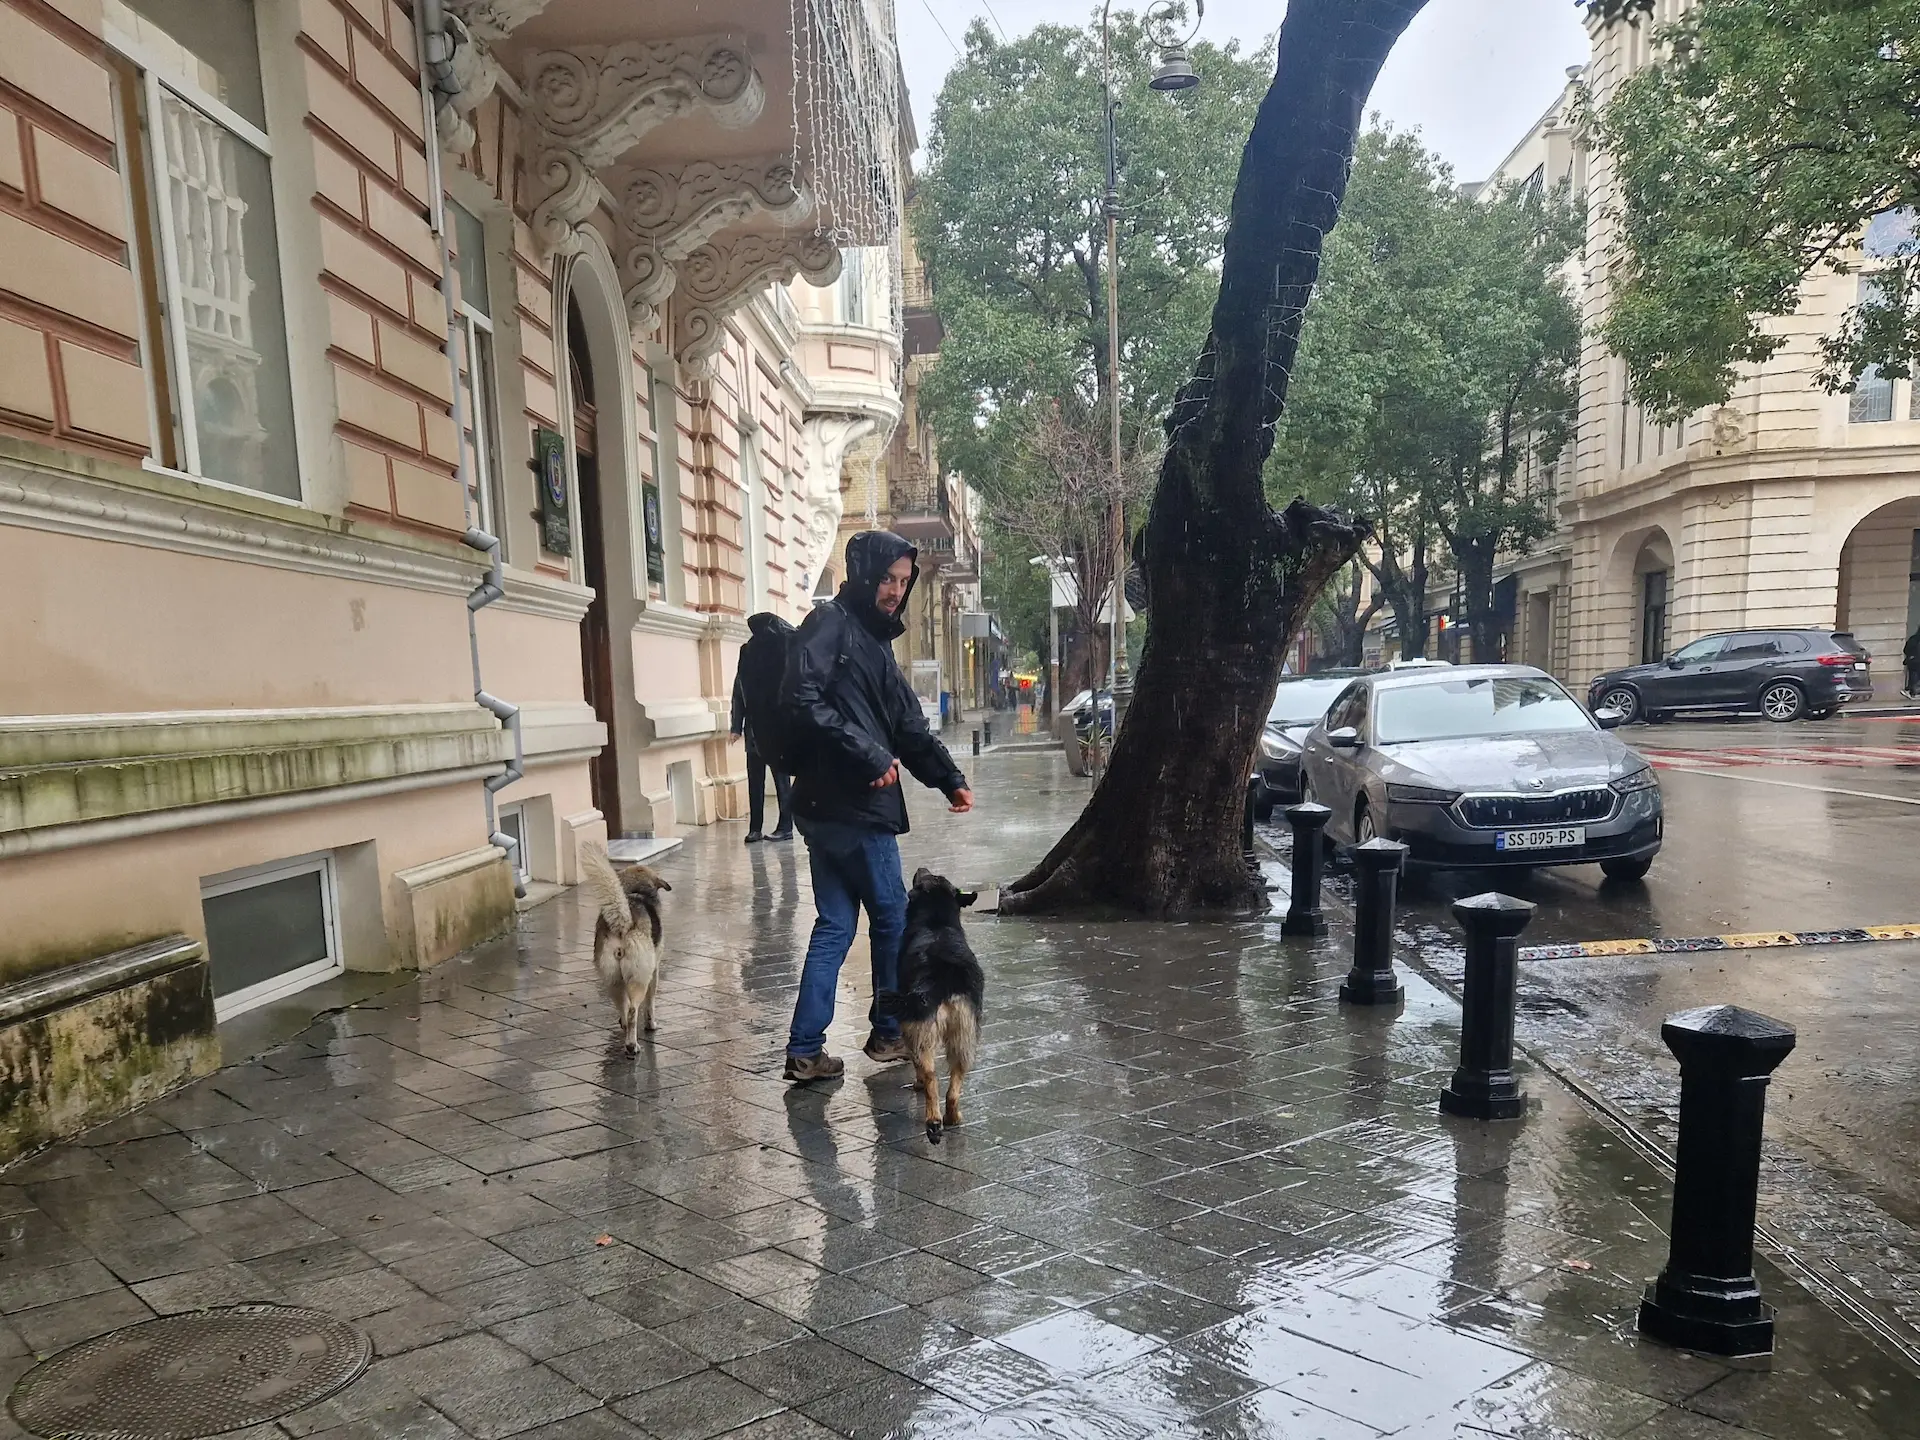 Robin marche sous la pluie (avec veste noire et capuchon sur la tête). Il se retourne vers l'objectif et est suivi de deux gros chiens : sur sa gauche un chien brun, sur sa droite un chien noir qui le regarde dans les yeux.